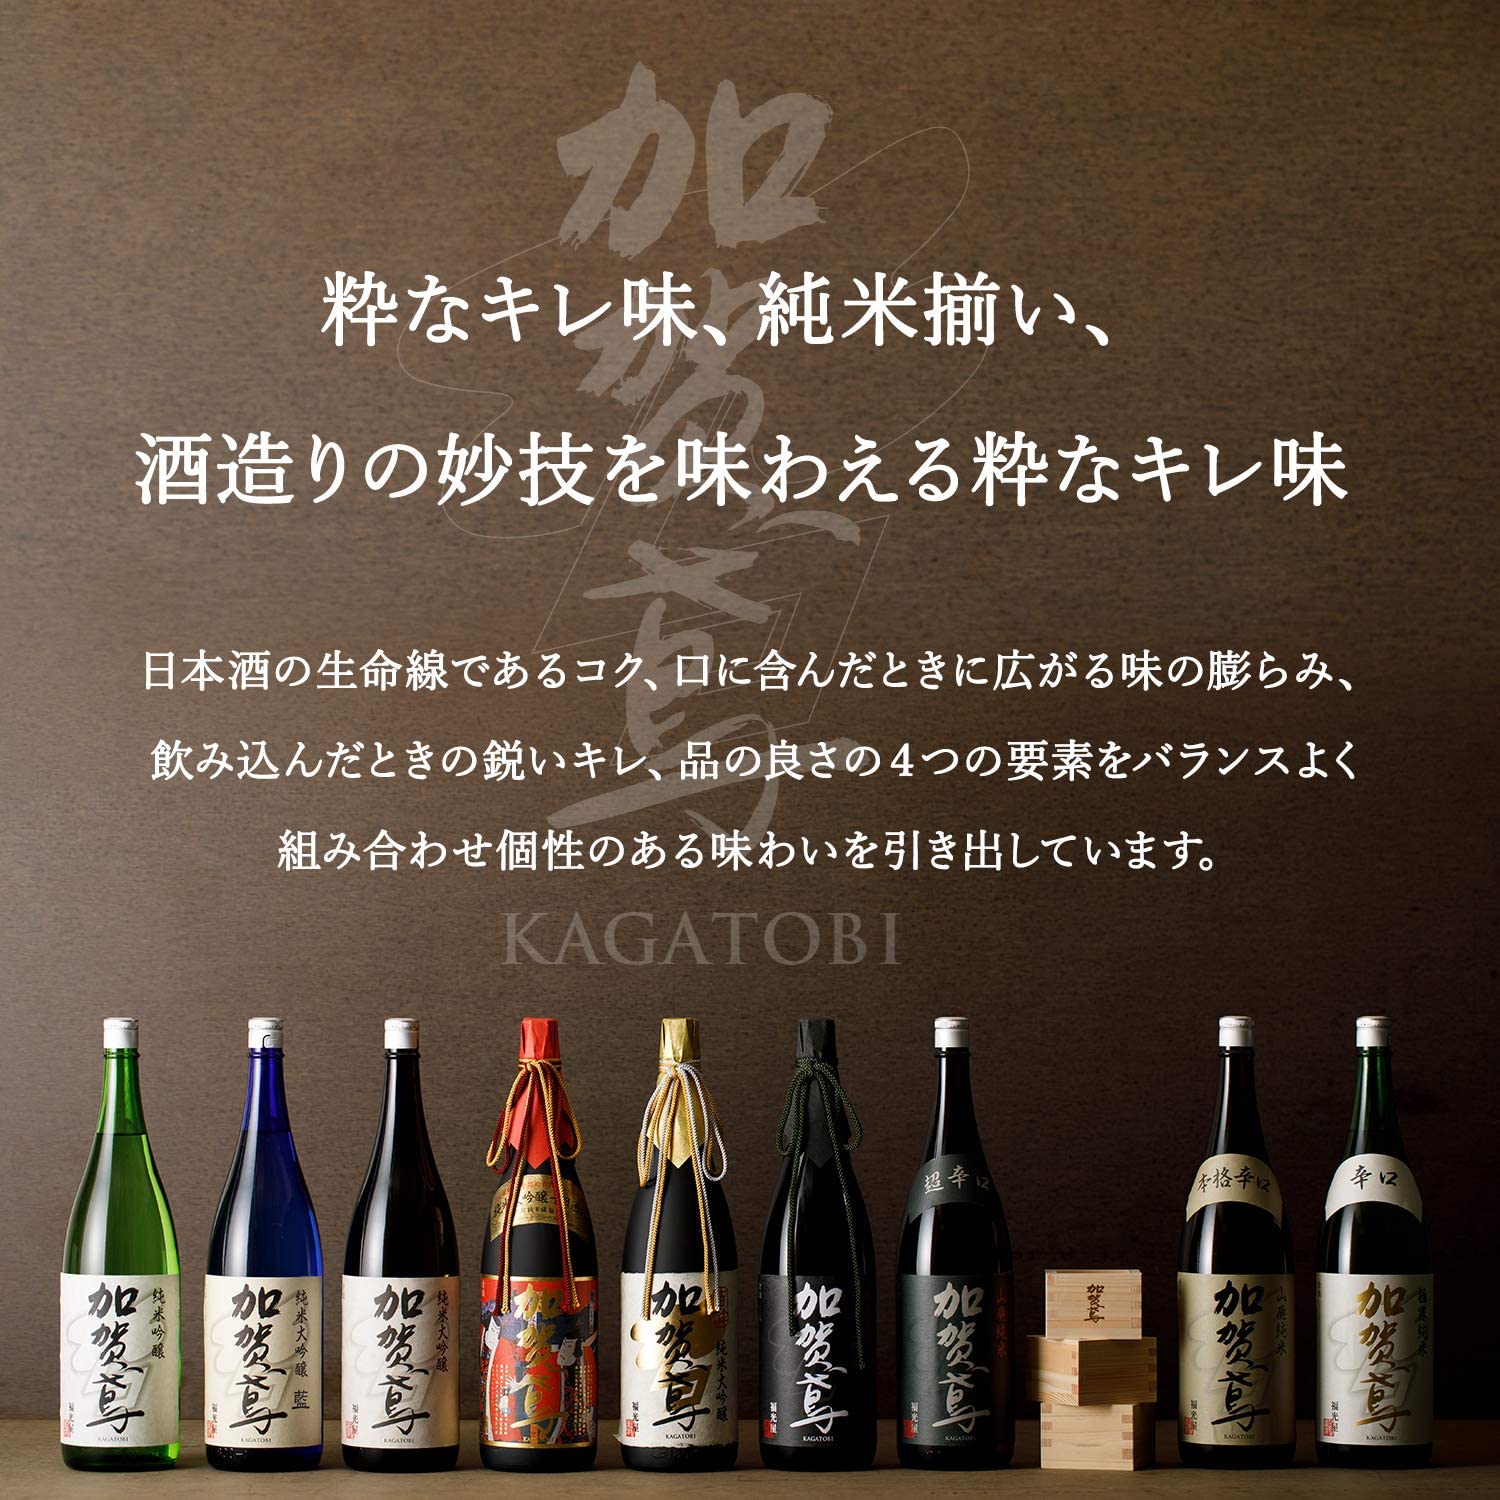 What kind of sake brand is 加賀鳶 Kaga Tobi?